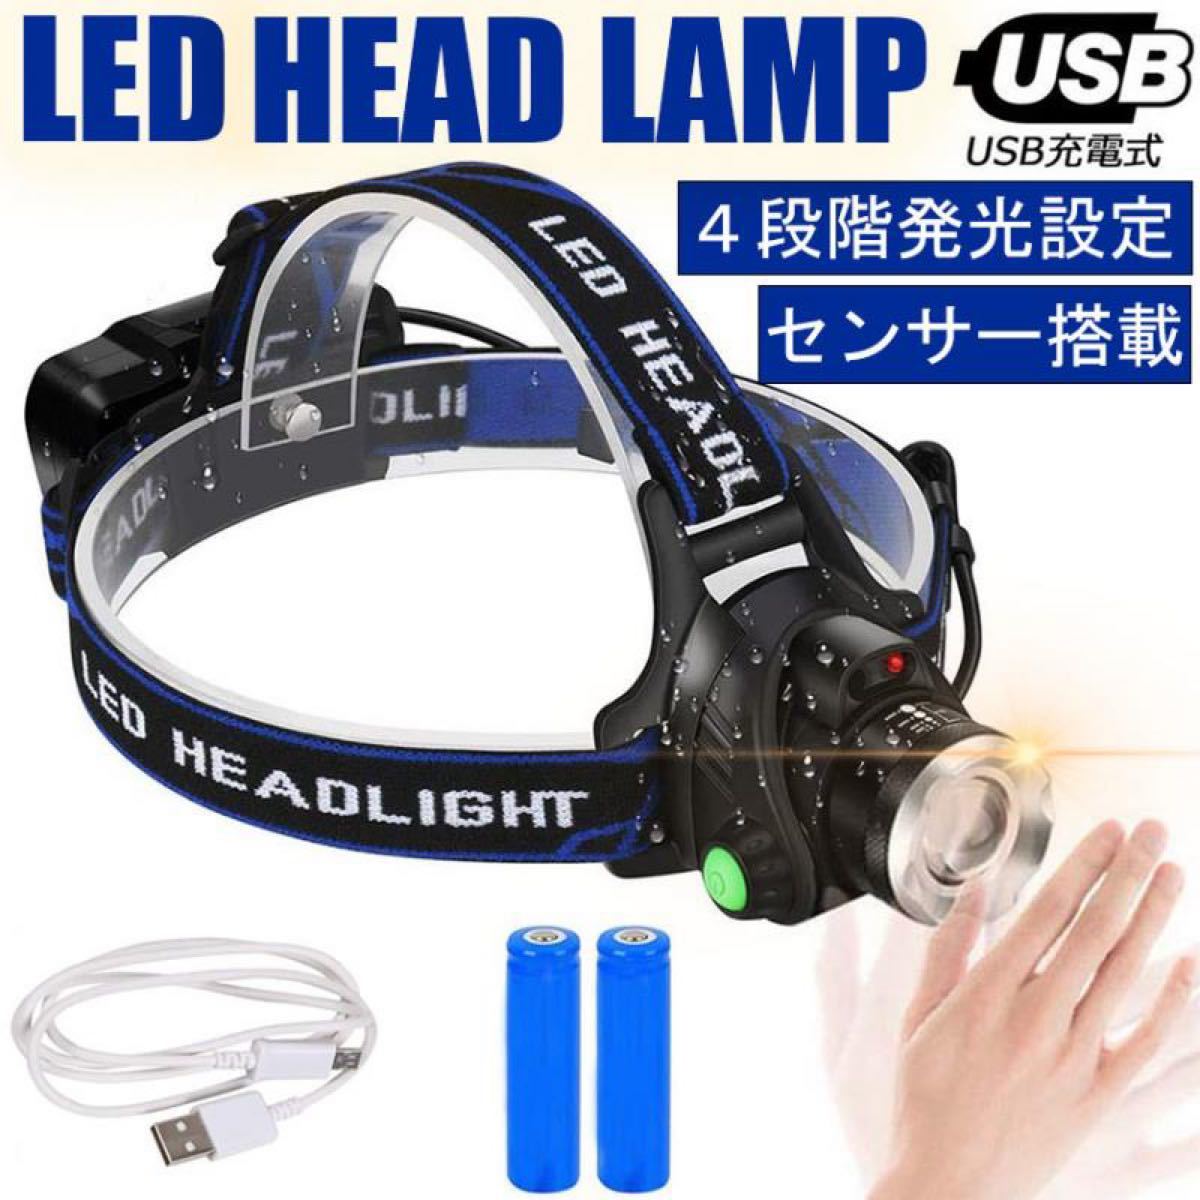 LEDヘッドライト センサー USB充電式 4モード 高輝度 防水 作業 キャンプ 散歩 登山 ランニング 釣り アウトドア 防災